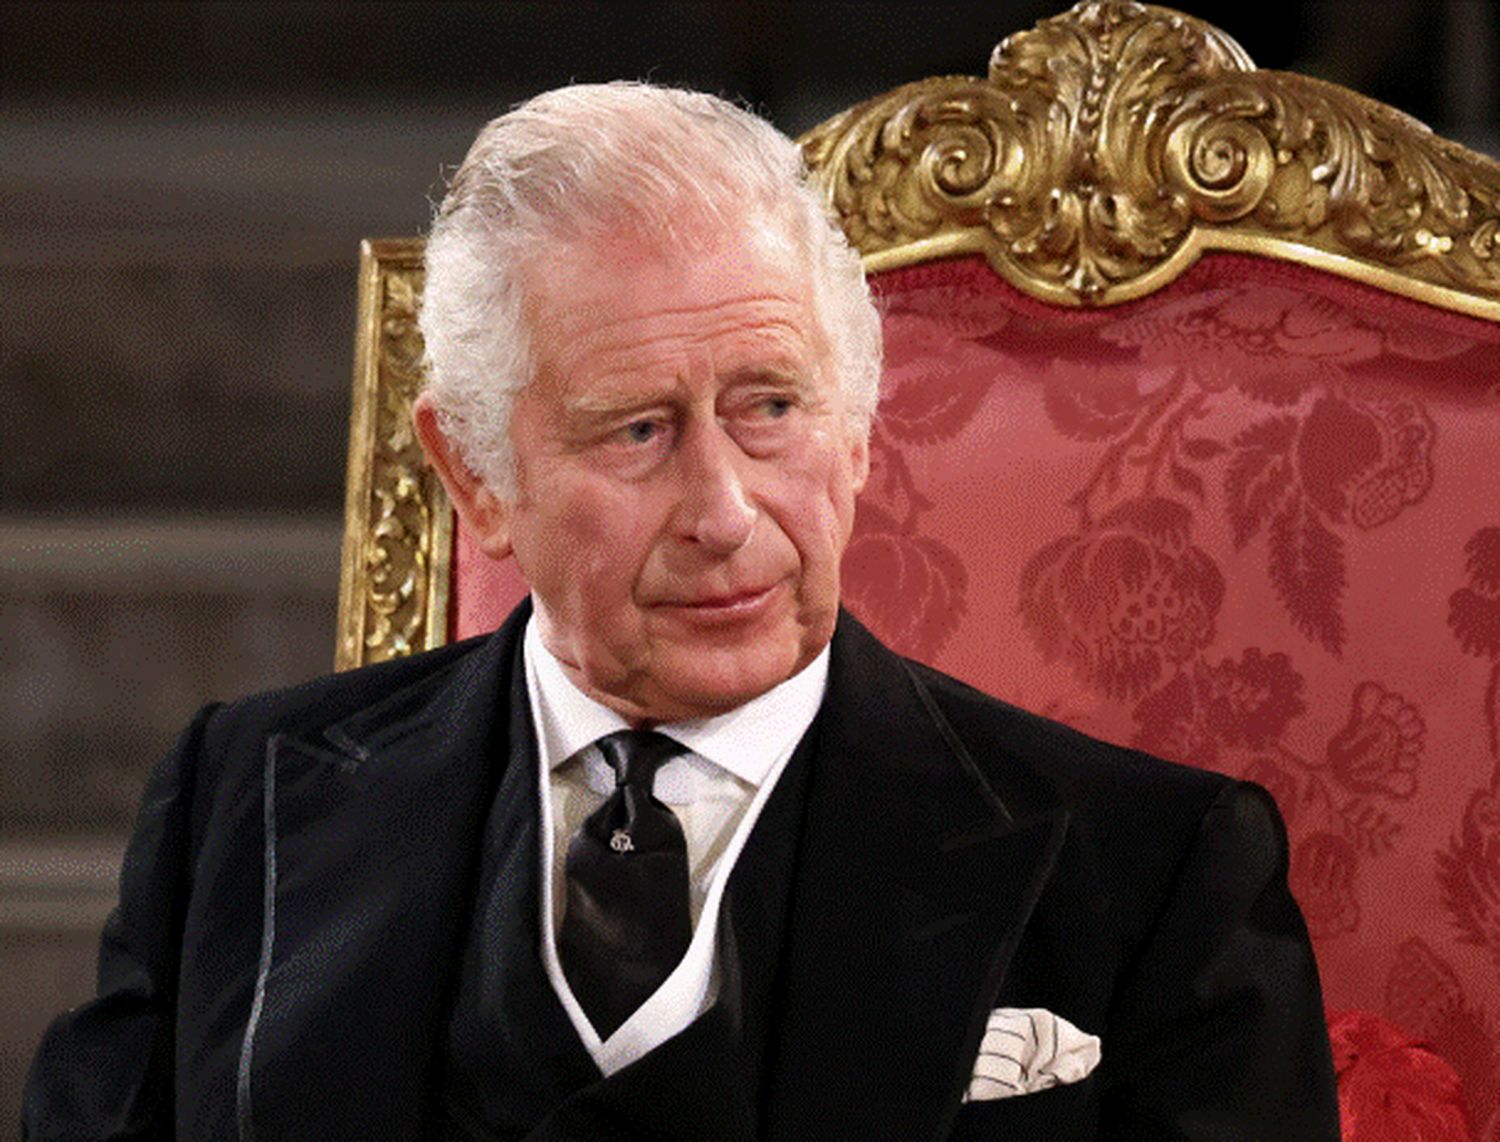 Charles a vrut să-l pună ca naș de botez pentru prințul Harry pe unul dintre cei mai cunoscuți pedofili. I-a trimis trabucuri cubaneze și butoni de aur